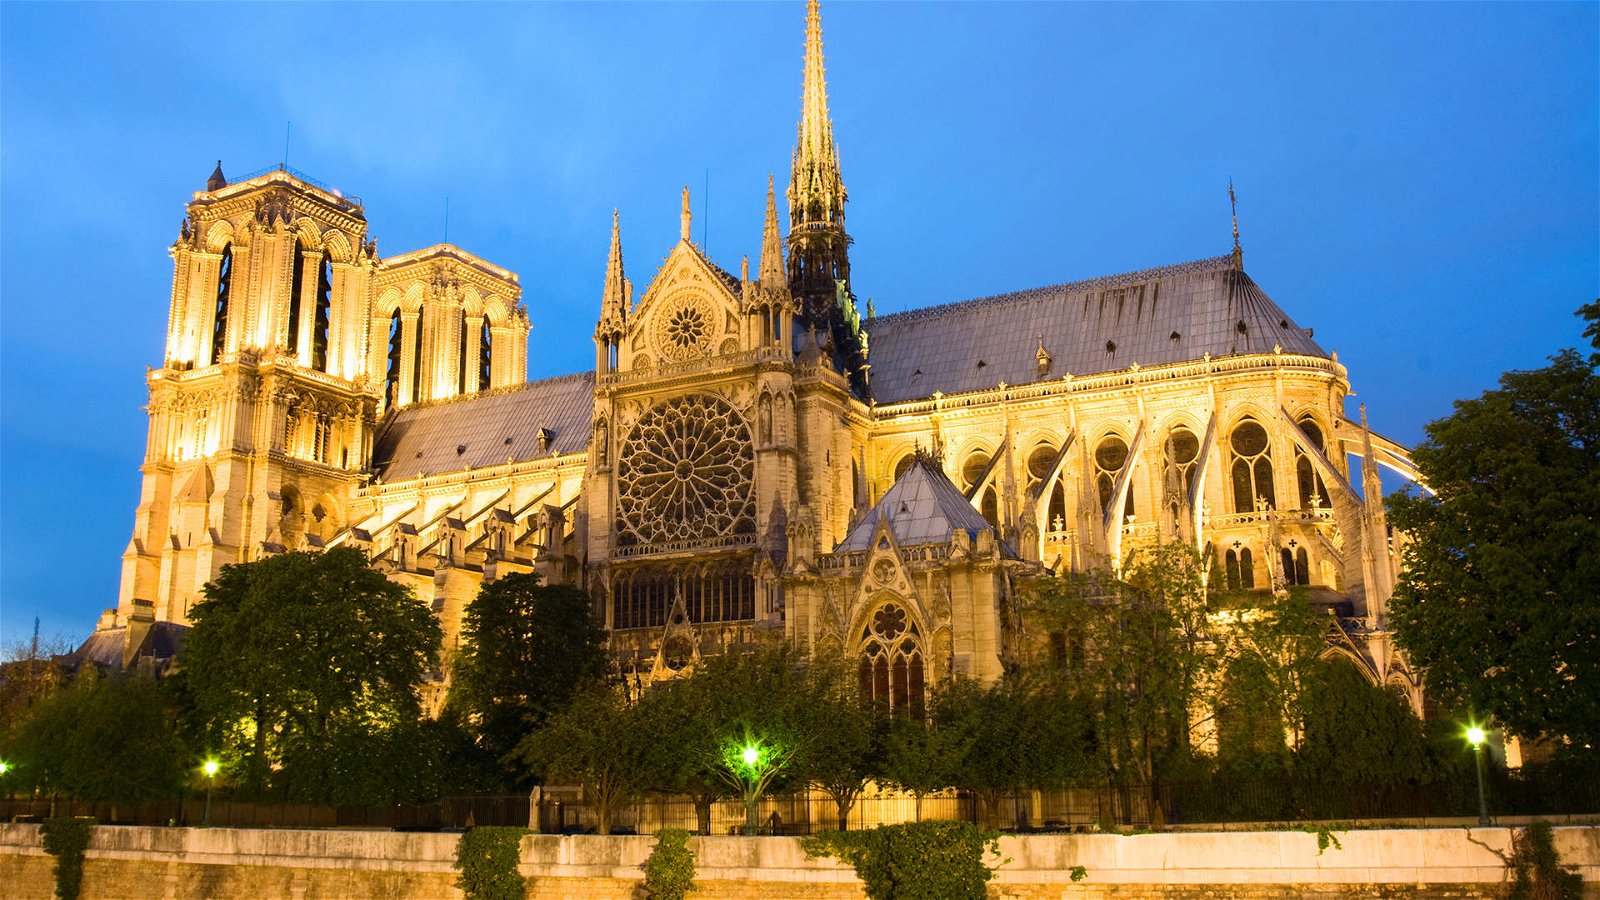 Immagine di Notre Dame, ricostruzione agevolata da una precedente scansione digitale?